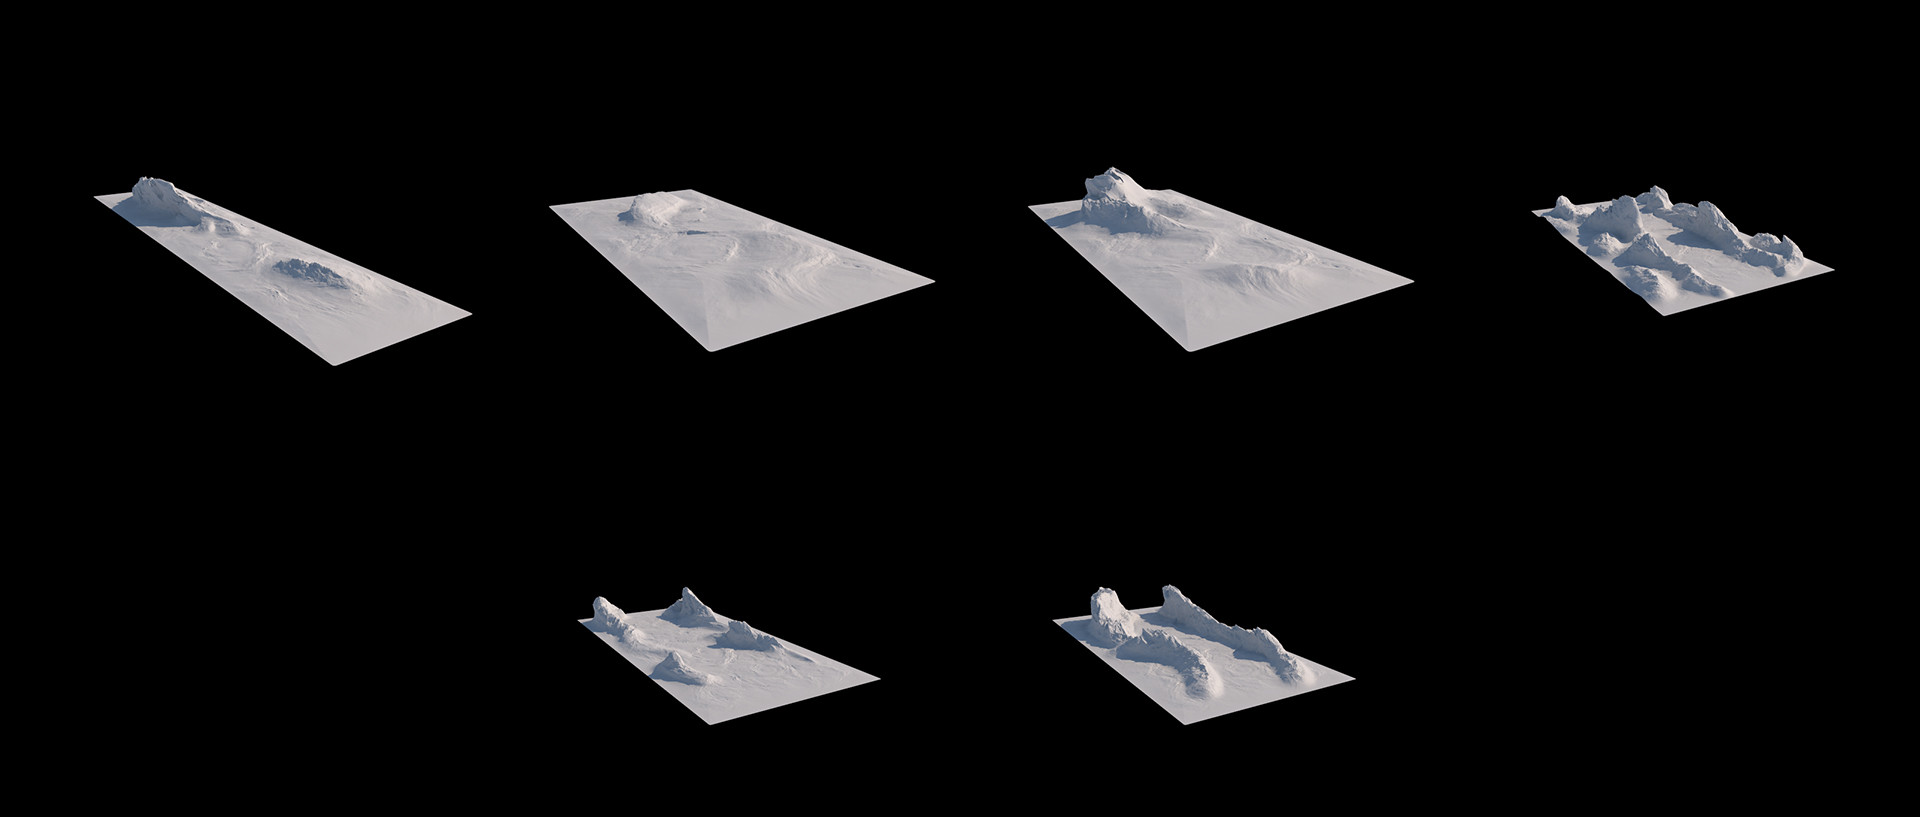 مدل سه بعدی کوه برای سینمافوردی - 10